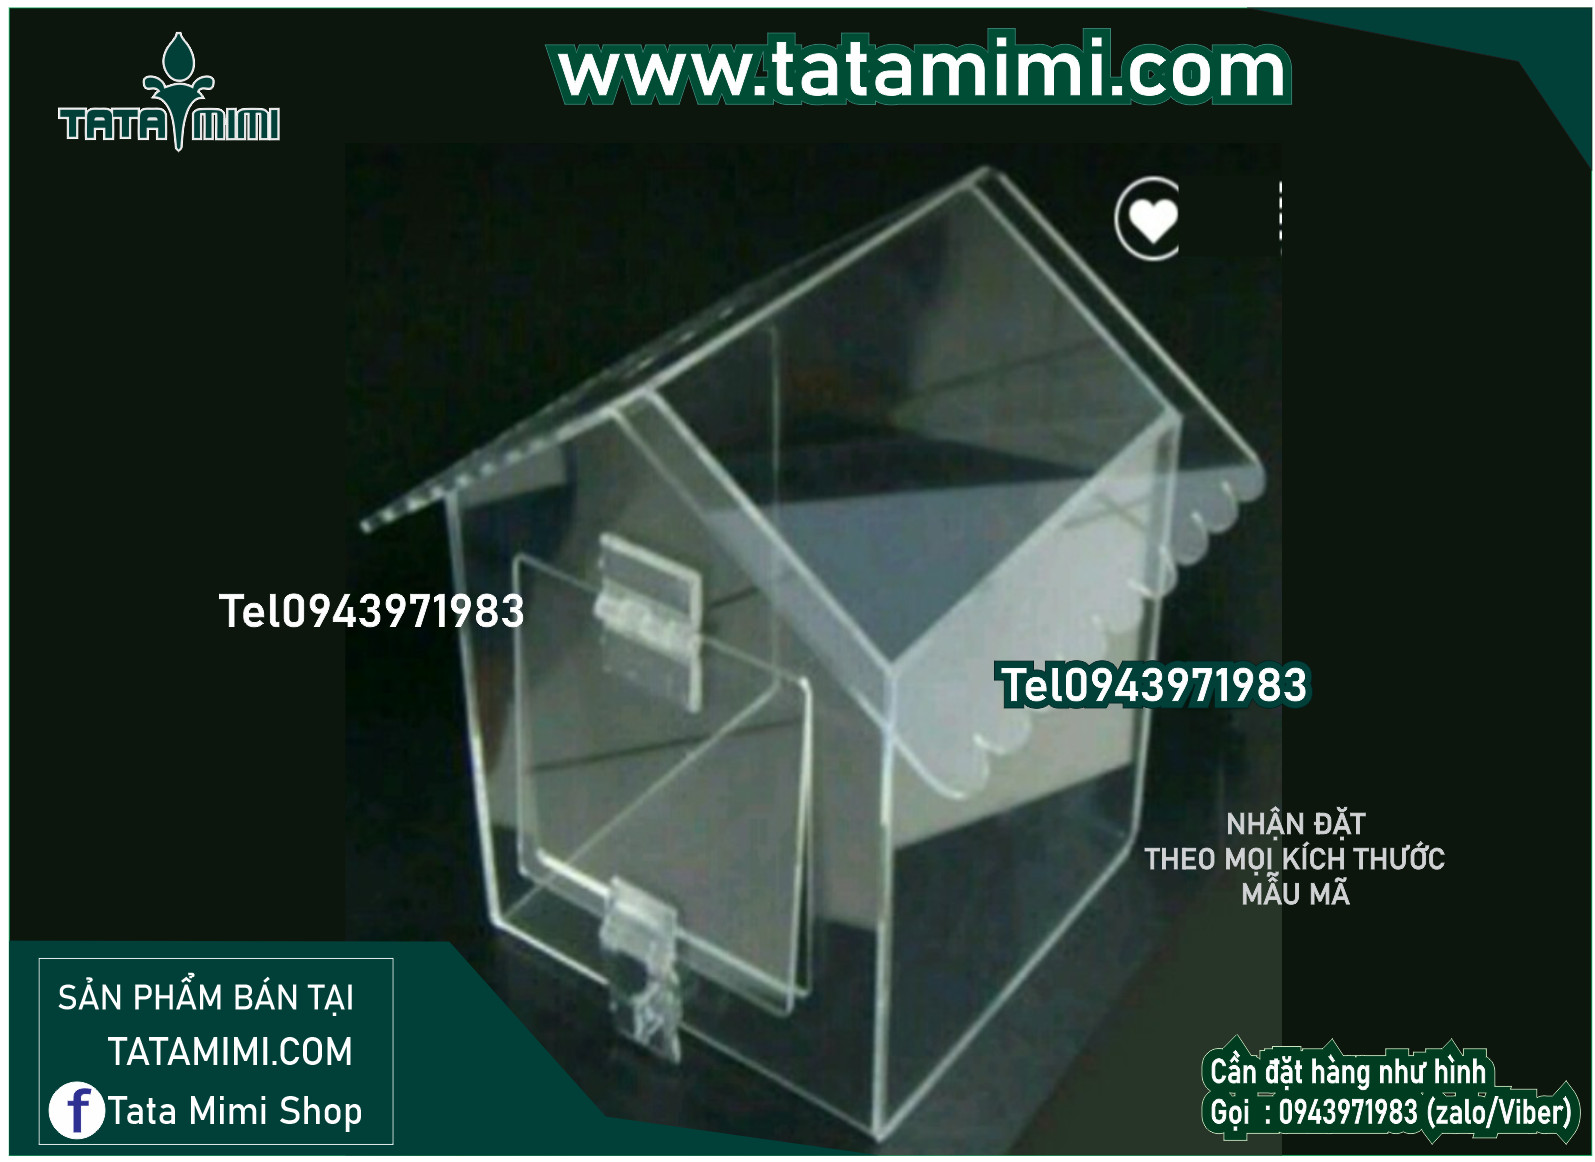 Tatamimi.com có sẵn thùng mica trong các kích thước